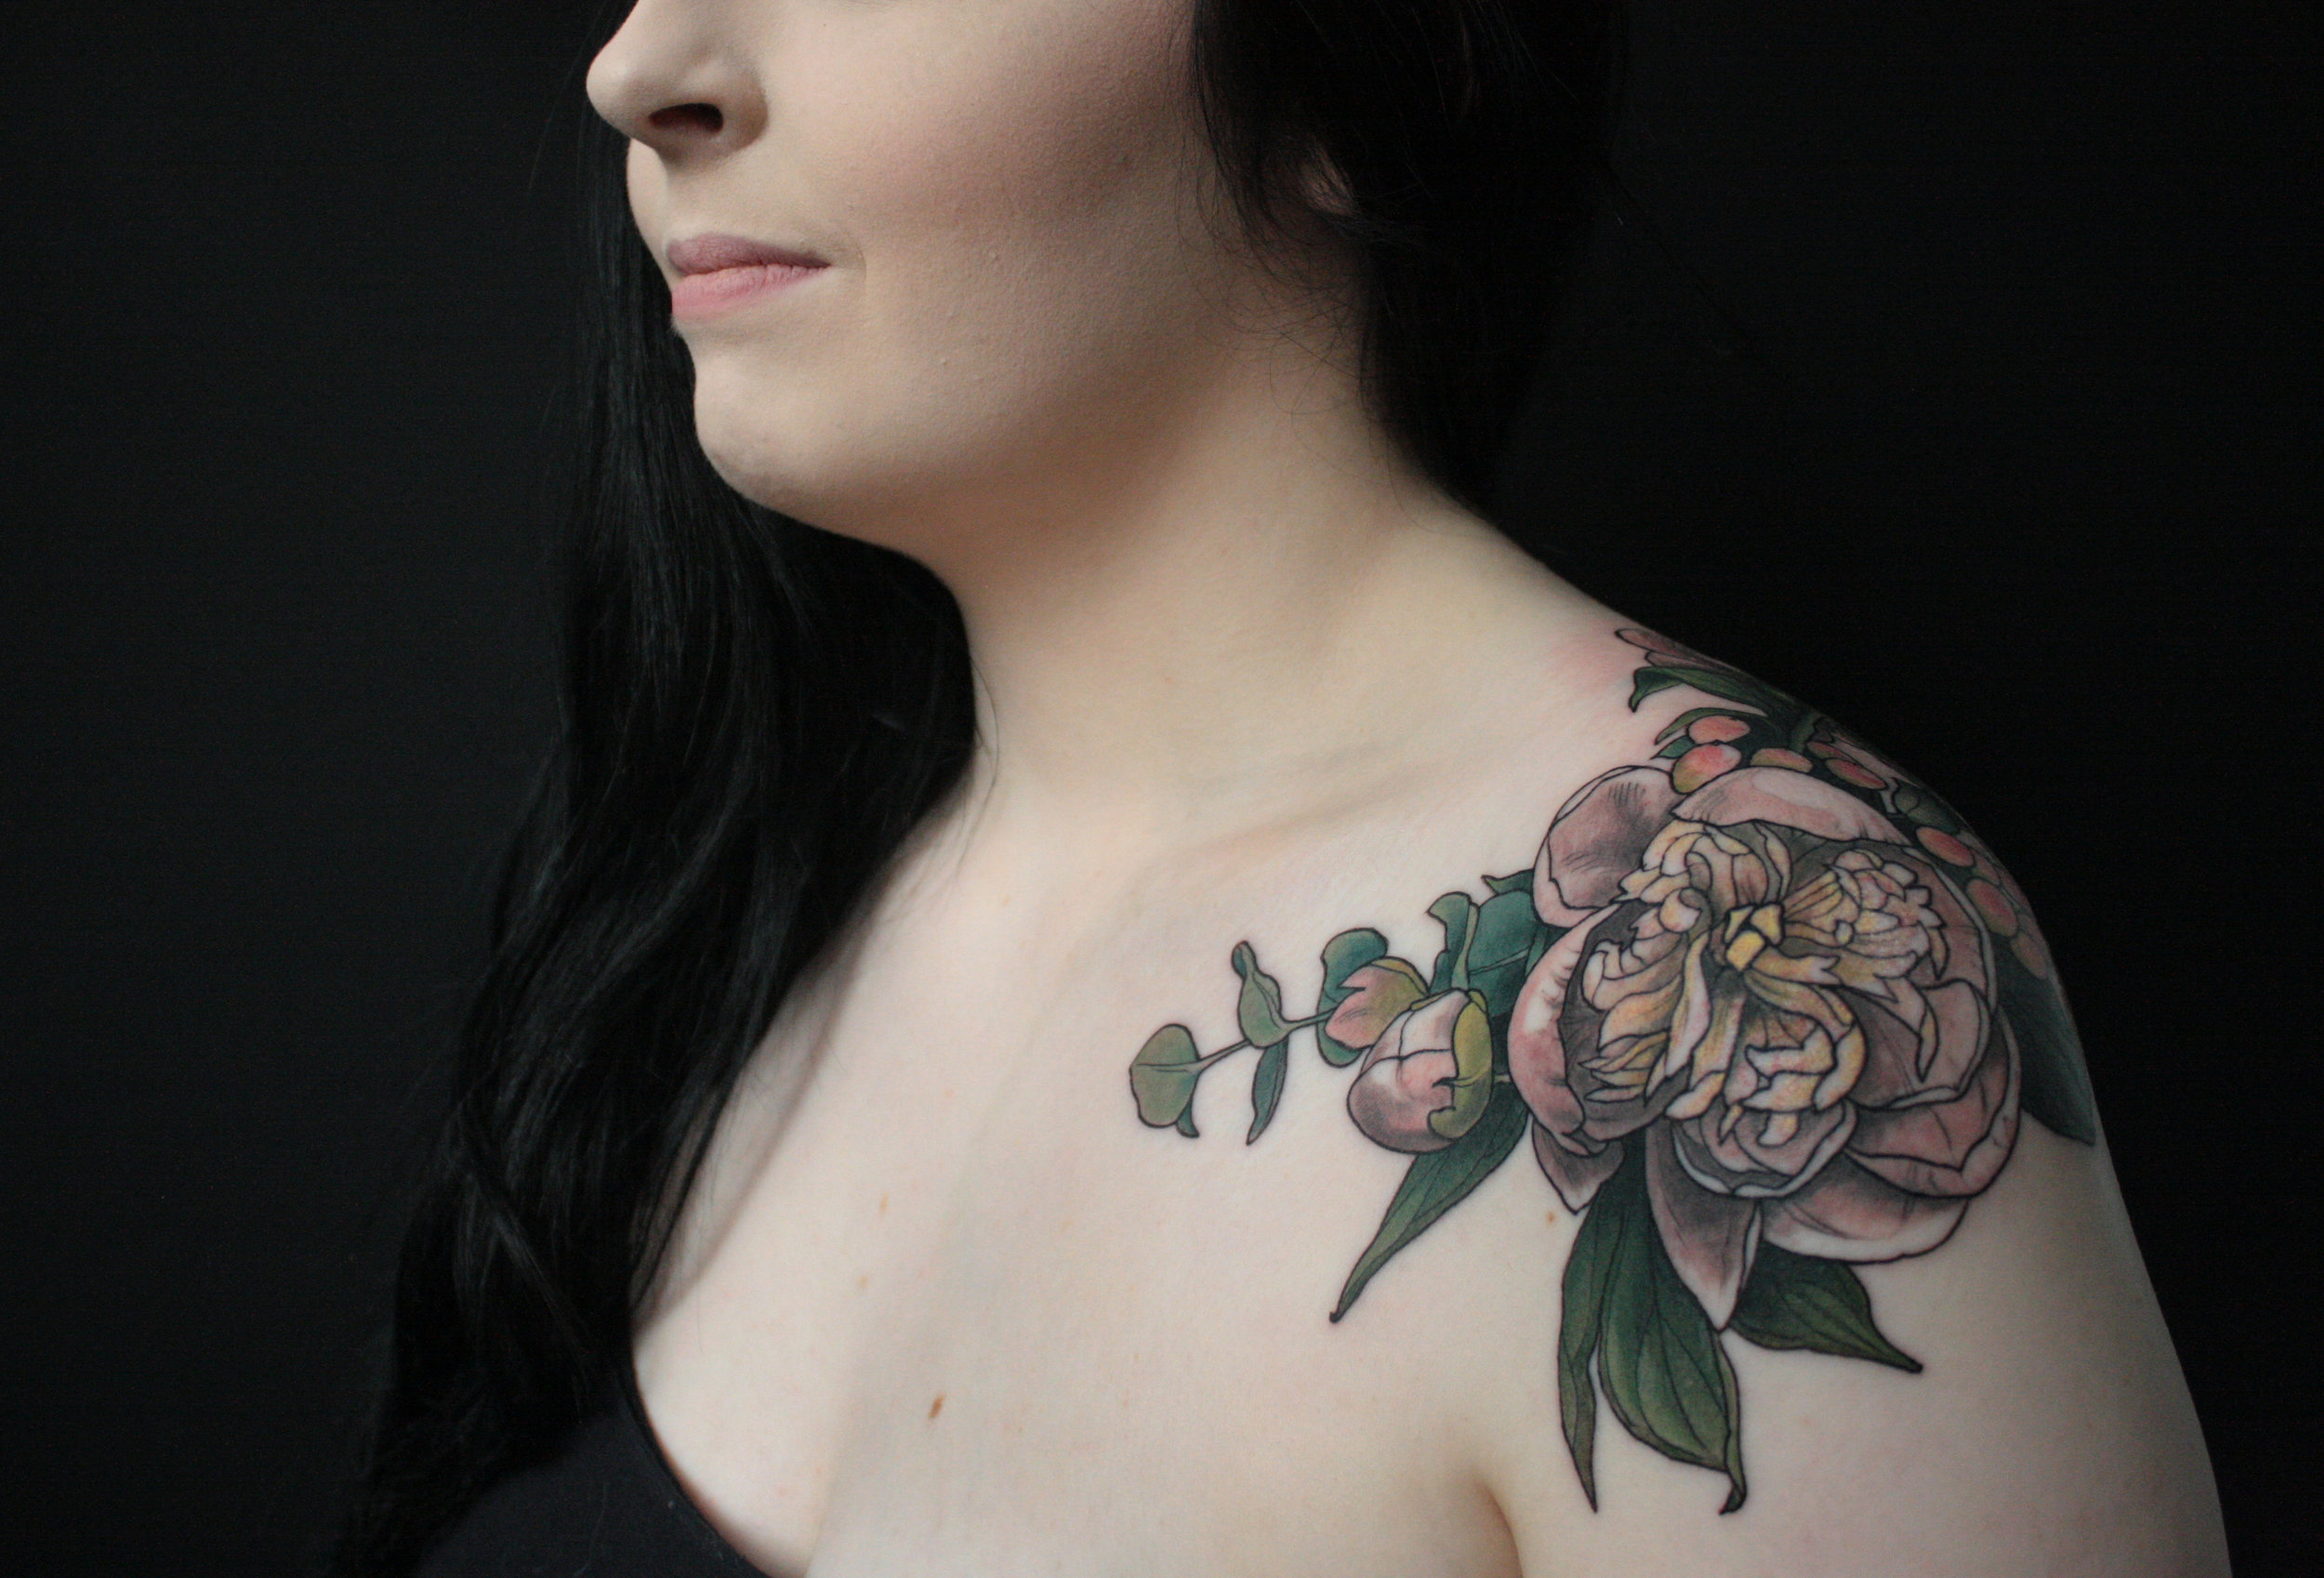 Megan — The Edge Tattoo